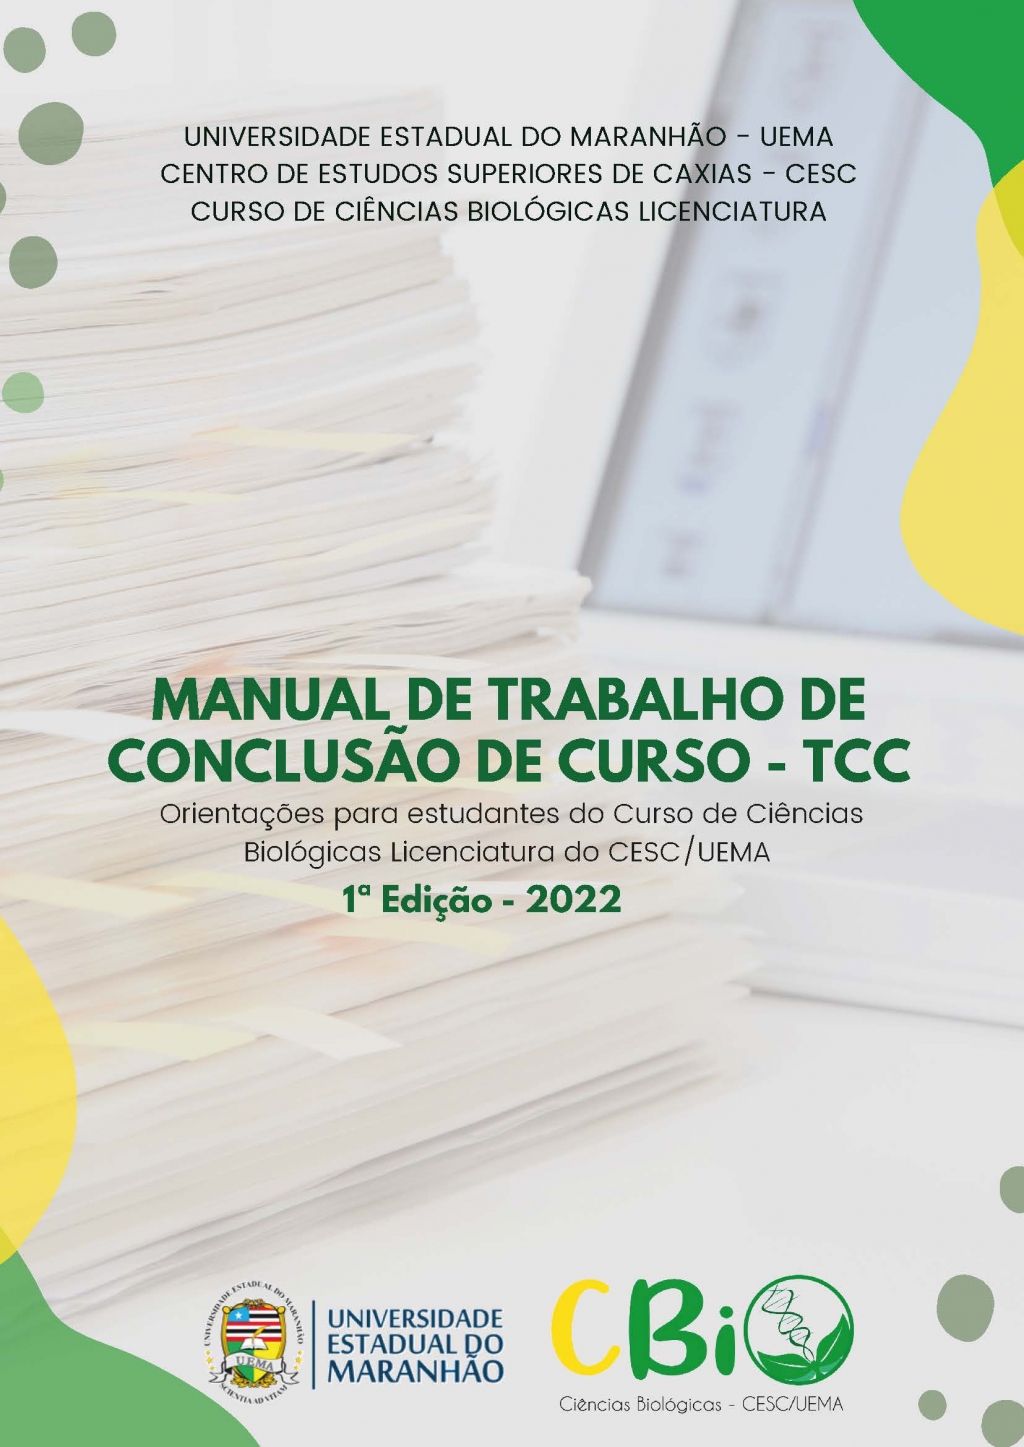 MANUAL DE TRABALHO DE CONCLUSÃO DE CURSO - TCC Orientações para estudantes do Curso de Ciências Biológicas Licenciatura do CESC/UEMA (DISPONÍVEL PARA DOWNLOAD)